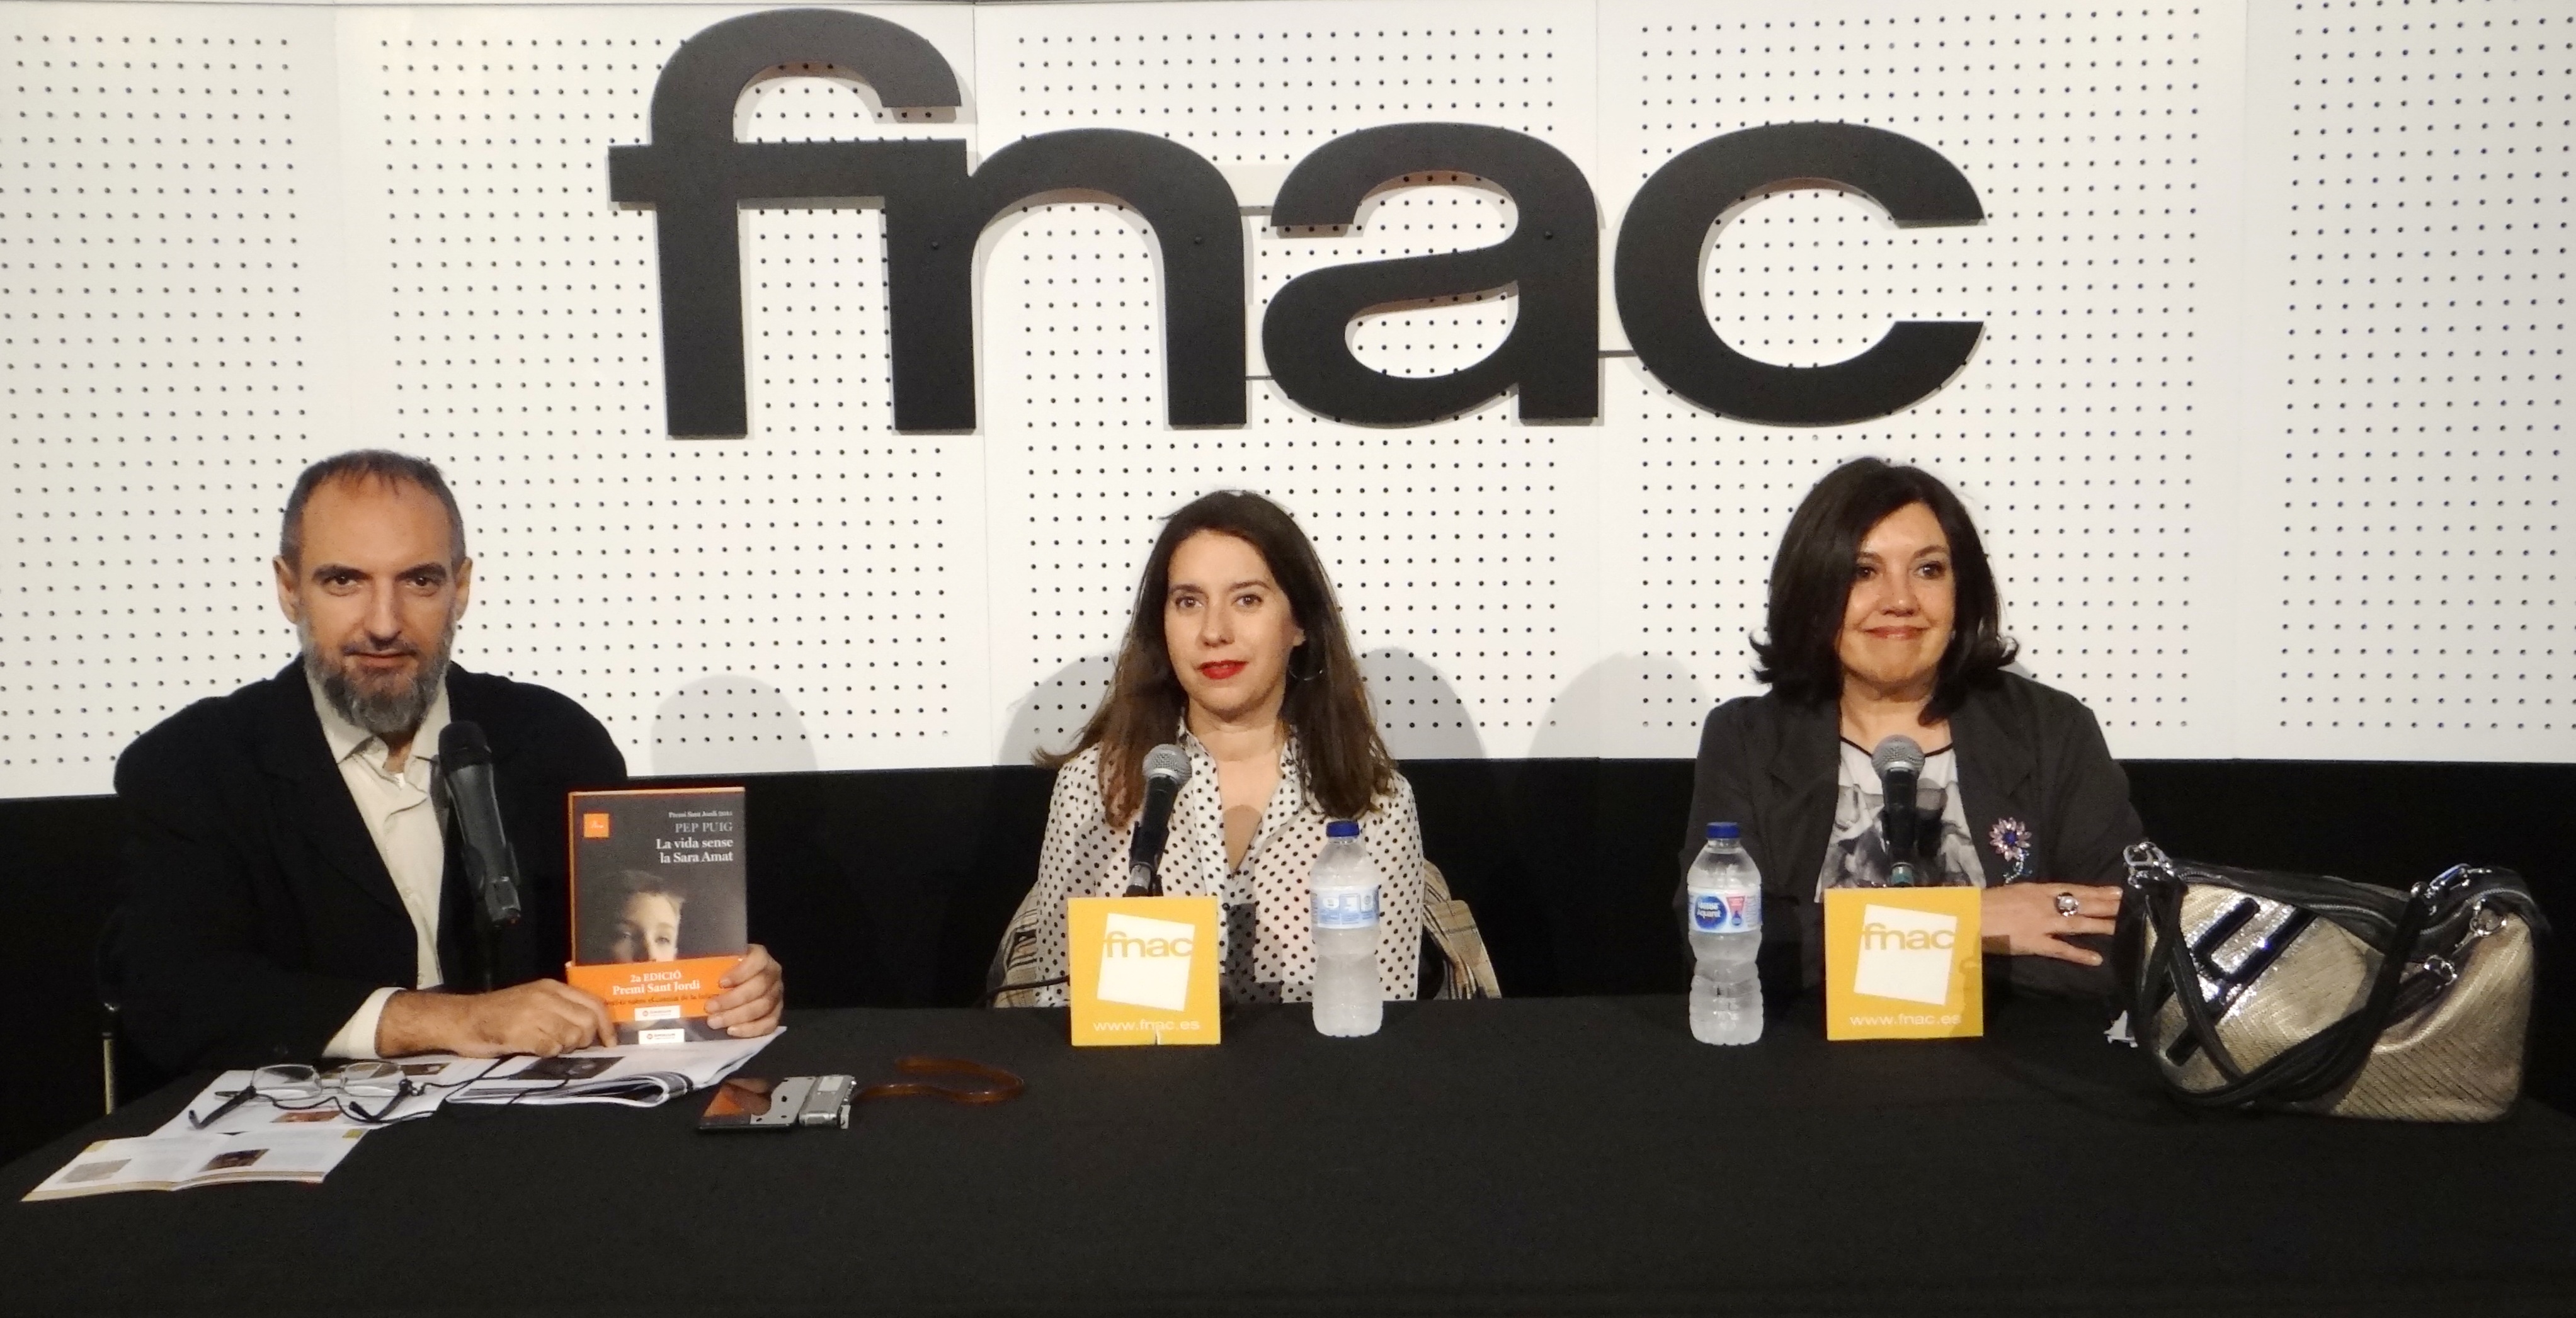 CCT-2019-04-12-Encuentro con Conxita Casanovas, directora del BCN Film Fest, y con Laura Jou, directora de la película “La vida sense la Sara Amat” (solo audio)